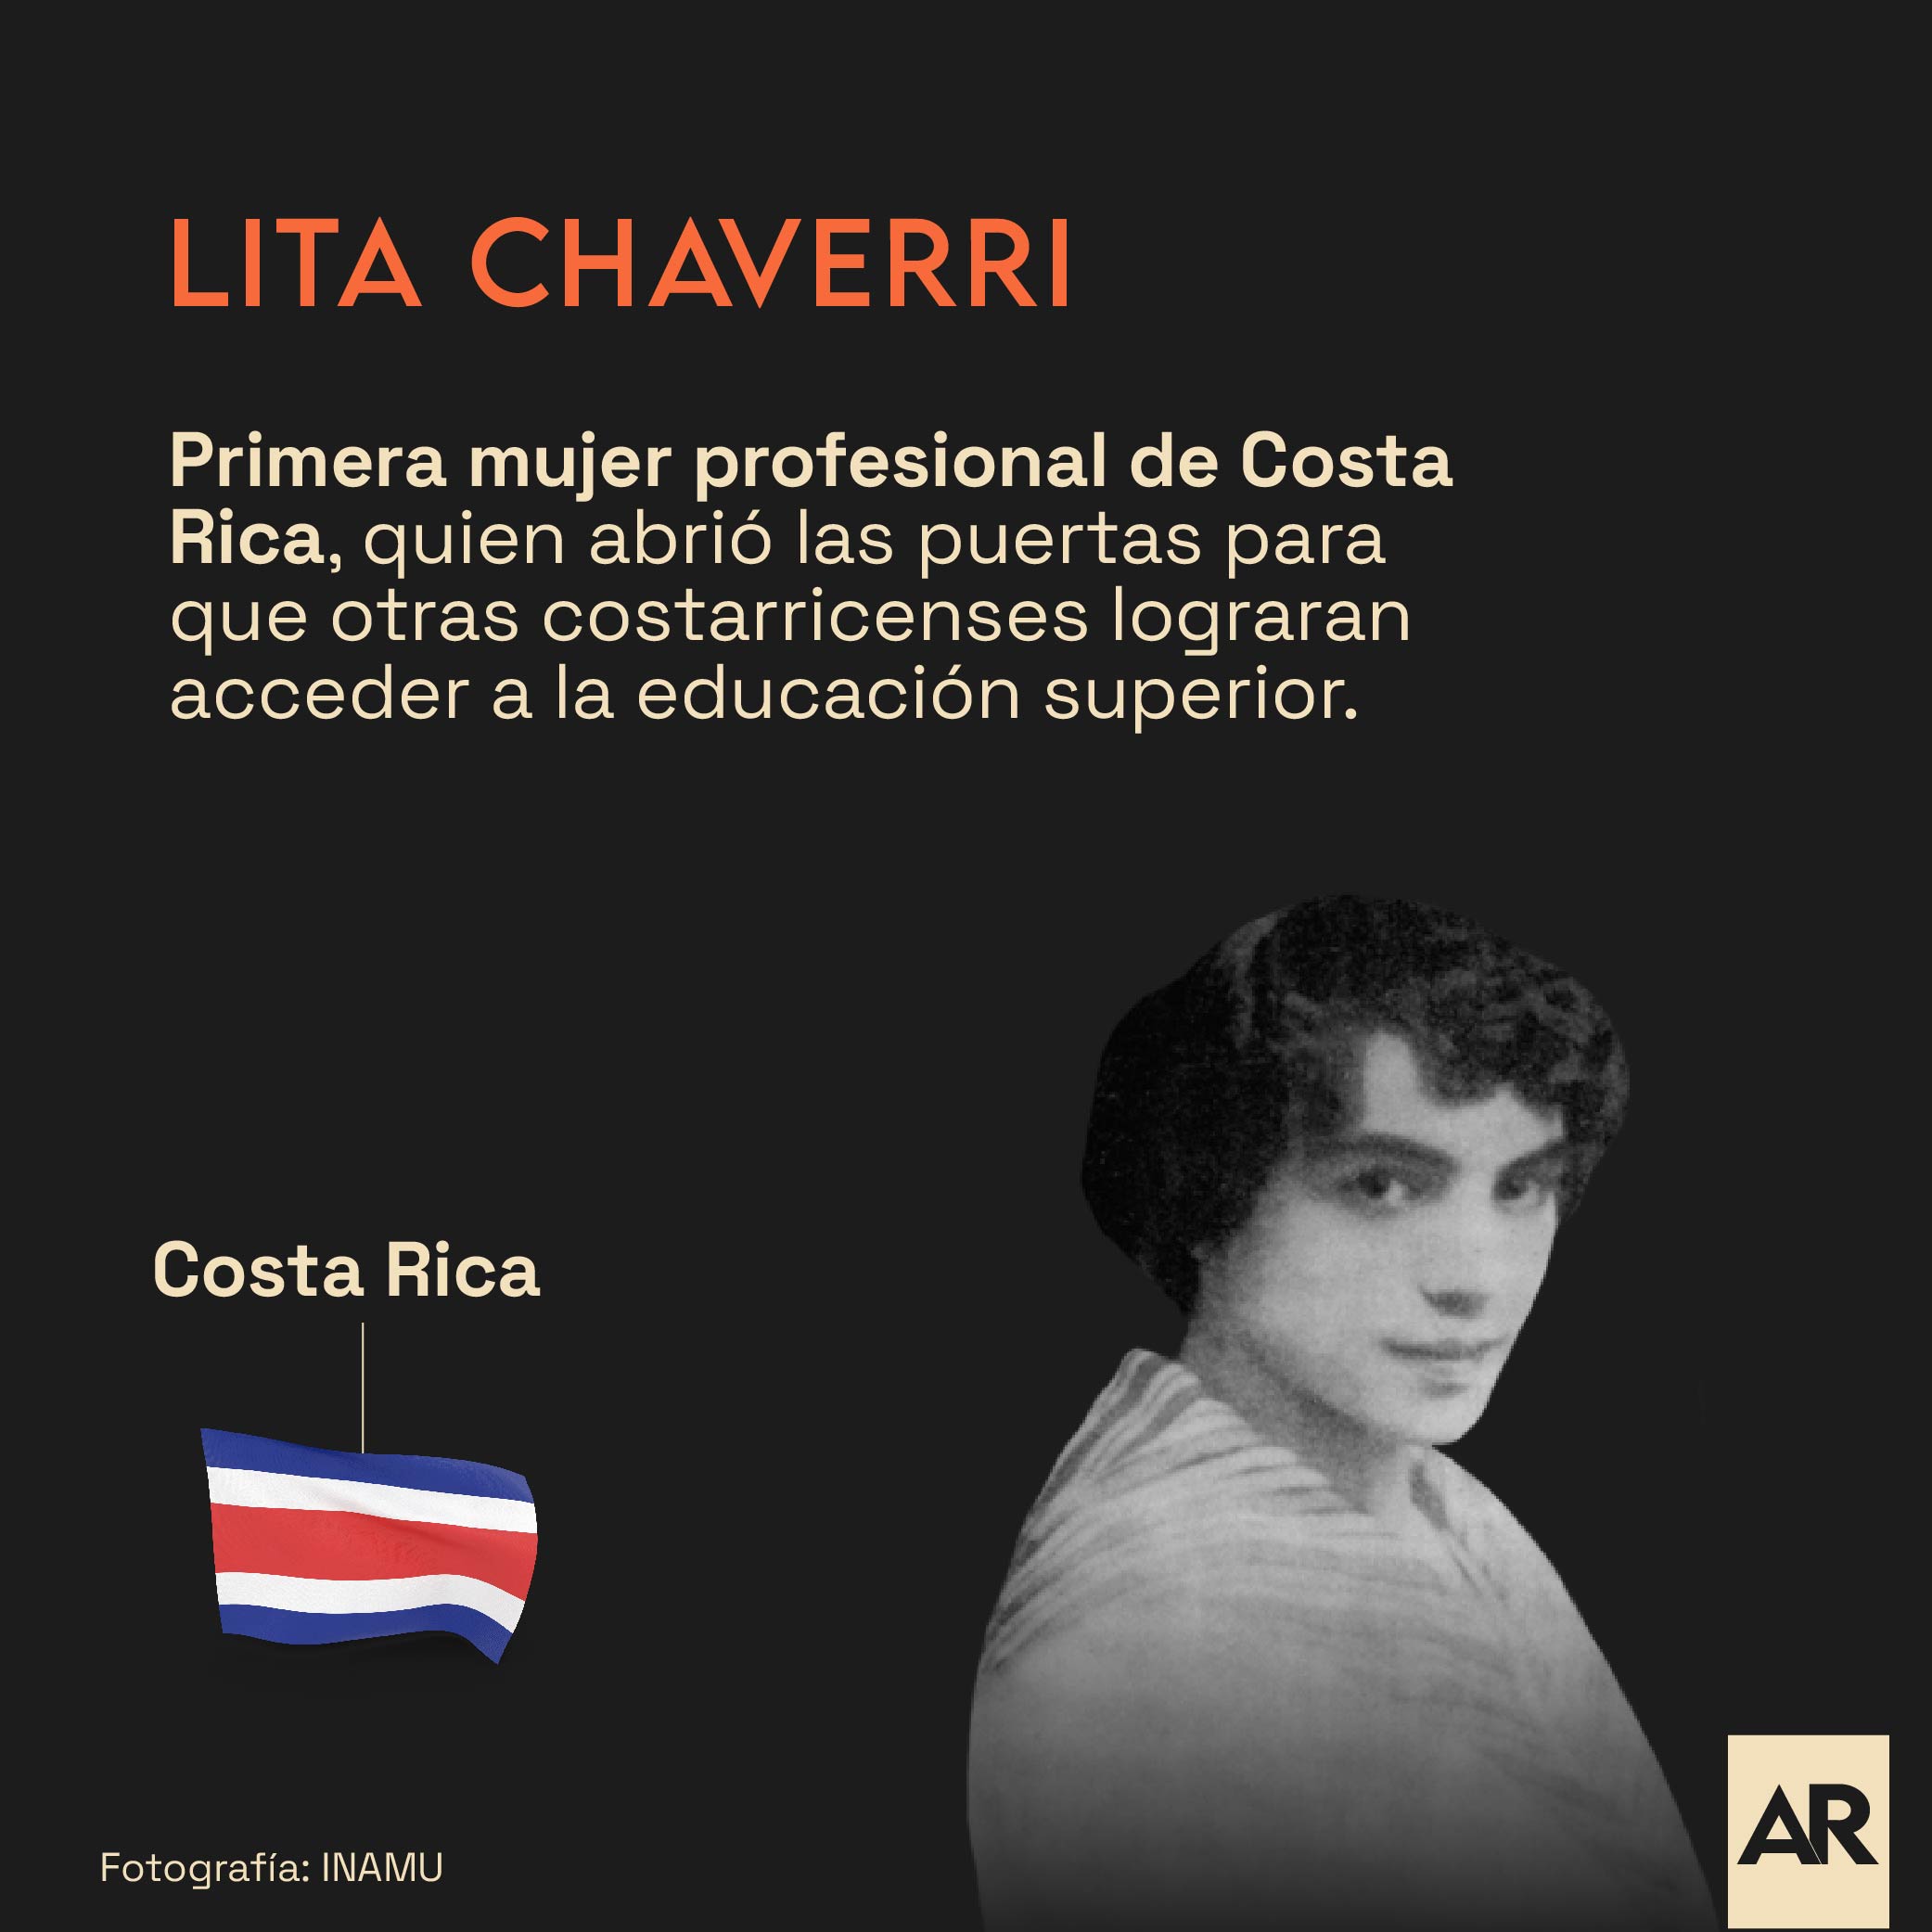 Lita Chaverri